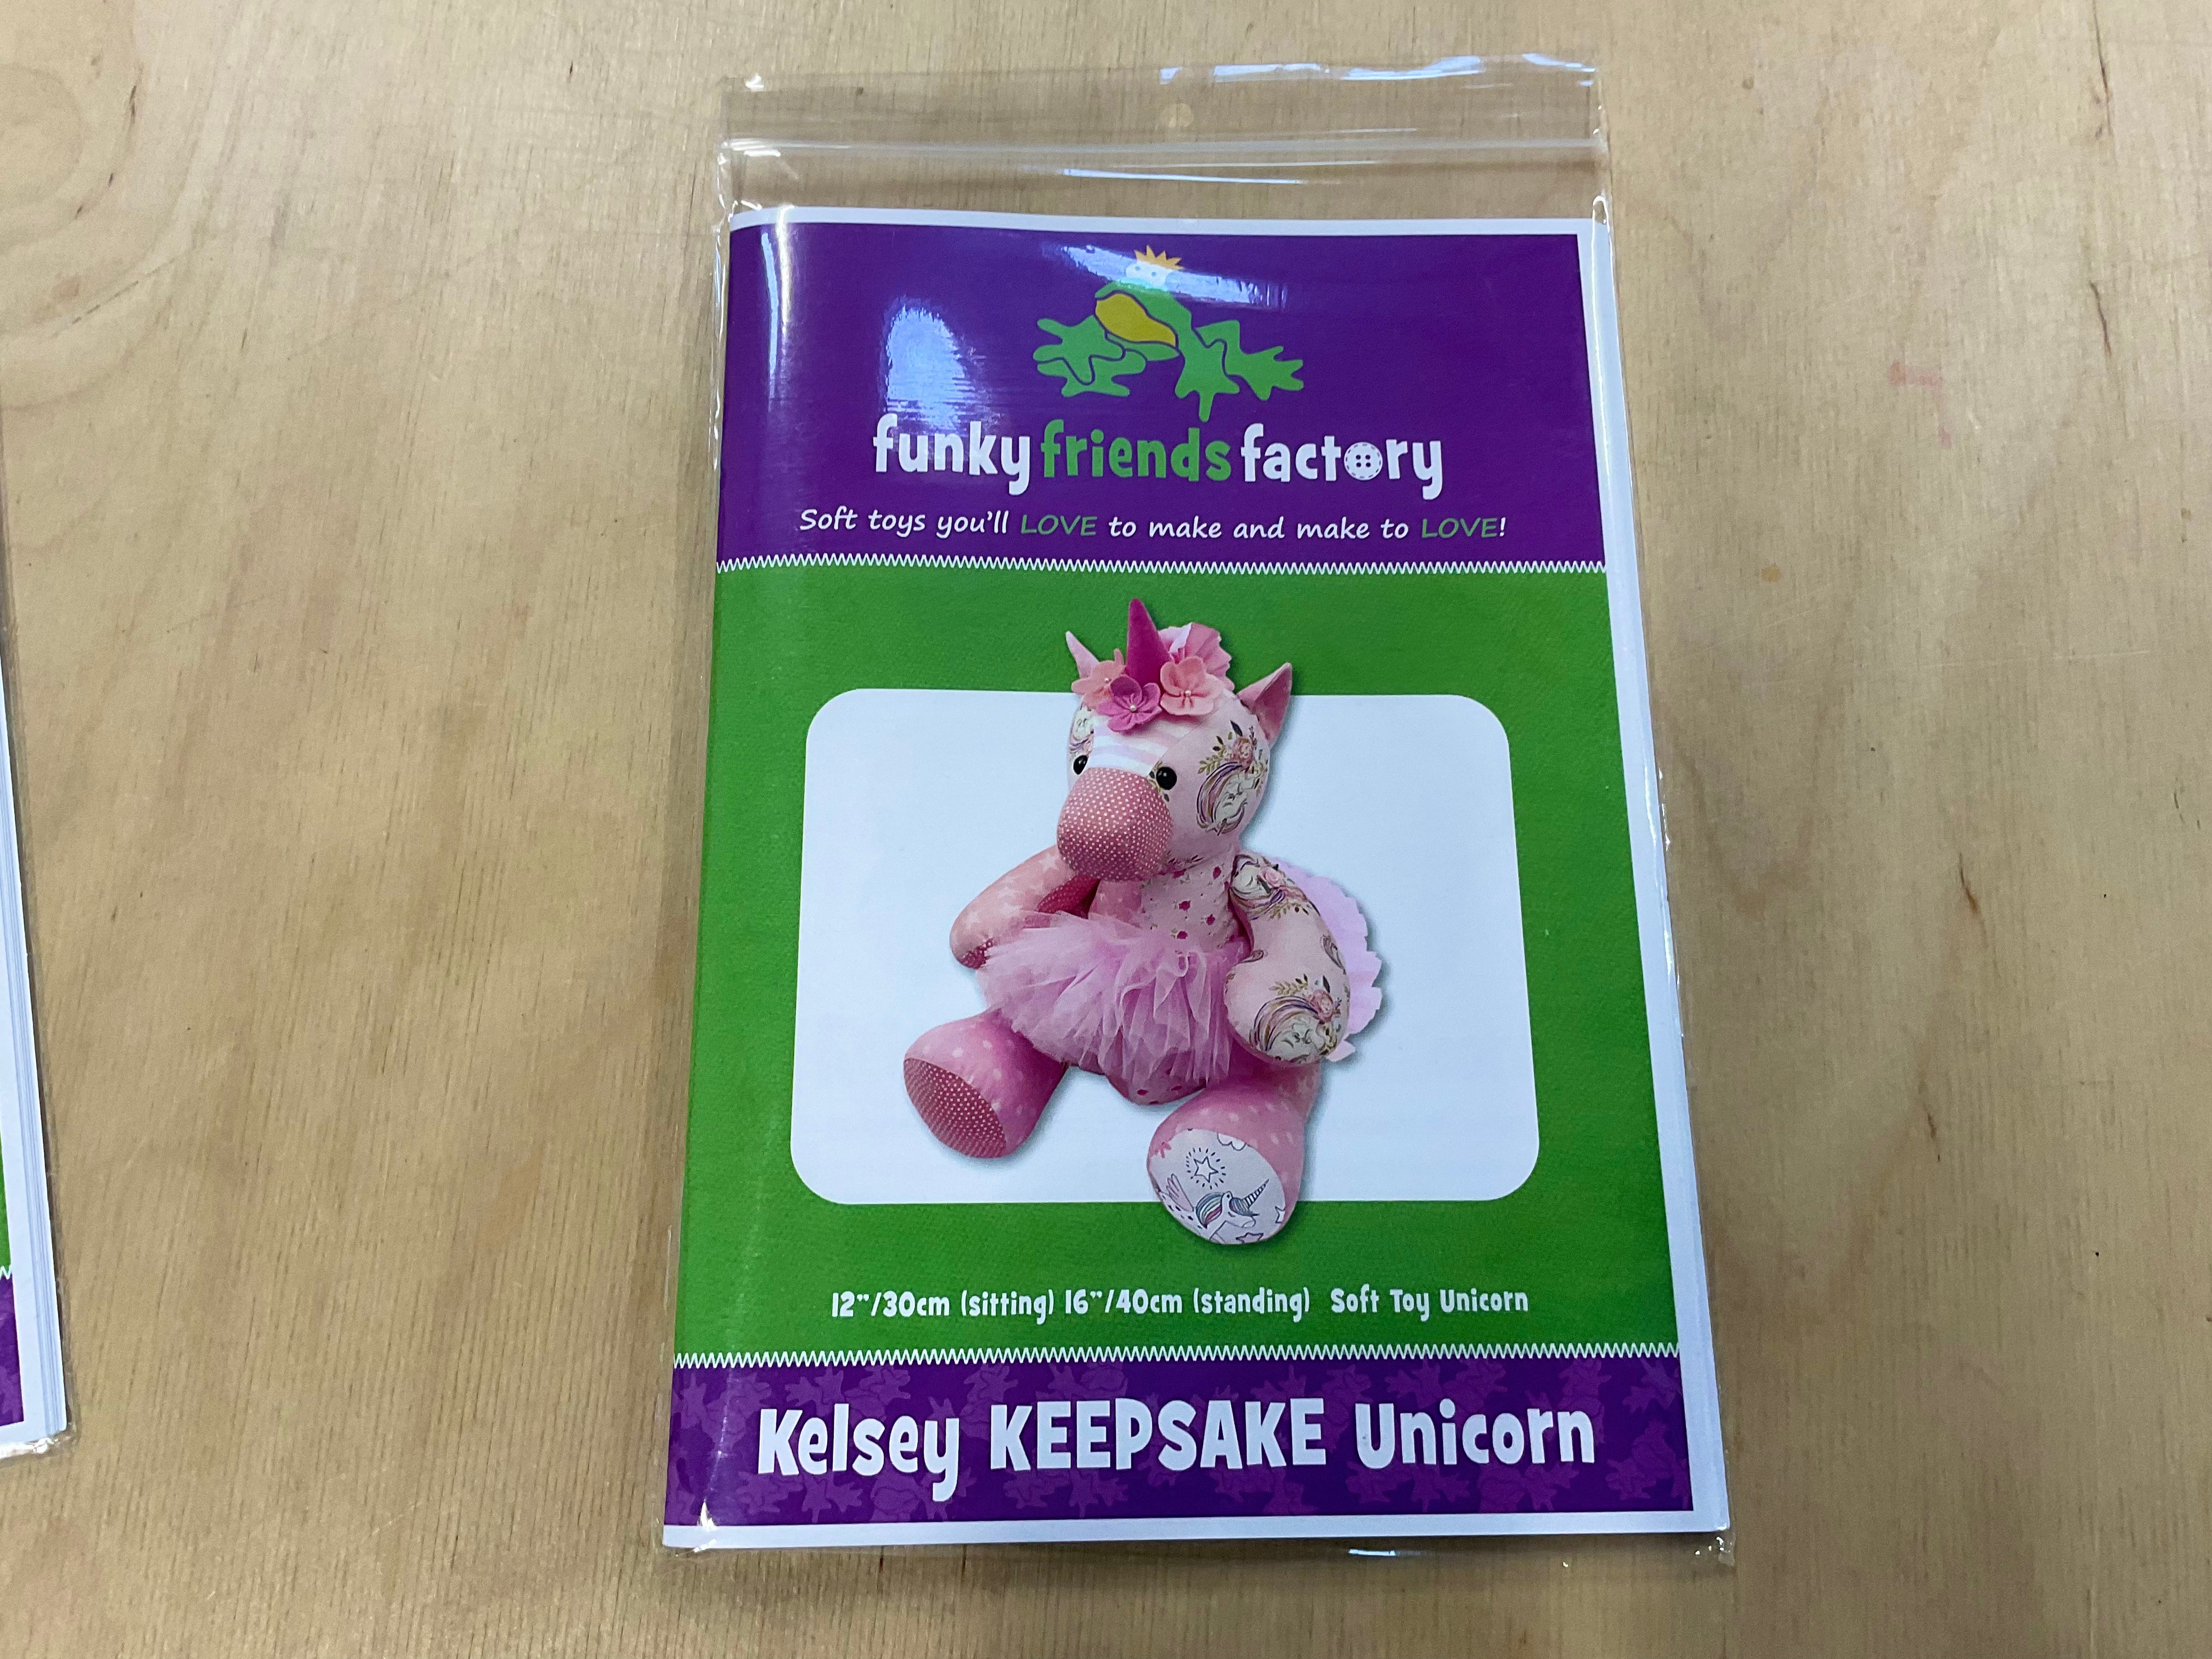 Kelsey Keepsake Unicorn Funky Friends Factory Soft Toy Pattern